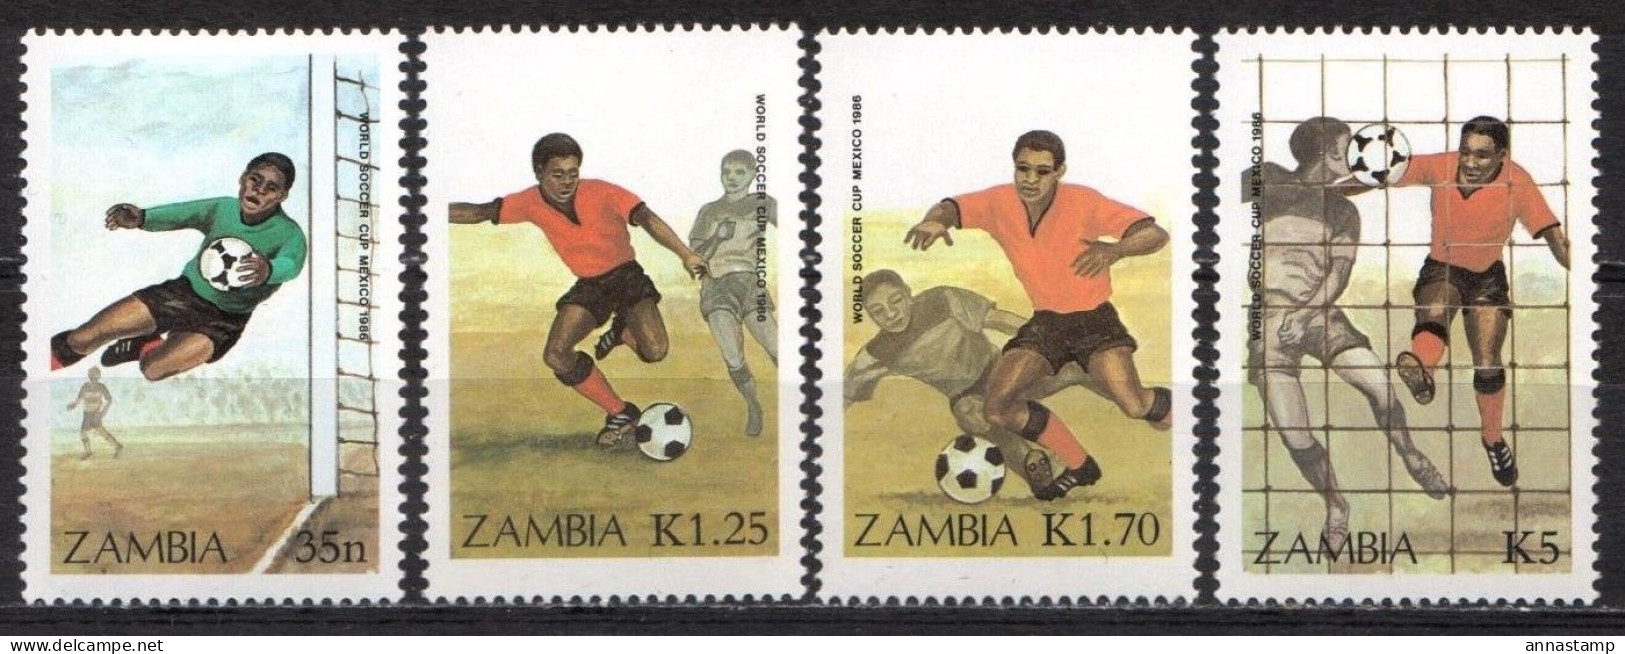 Zambia MNH Set - 1986 – Mexico